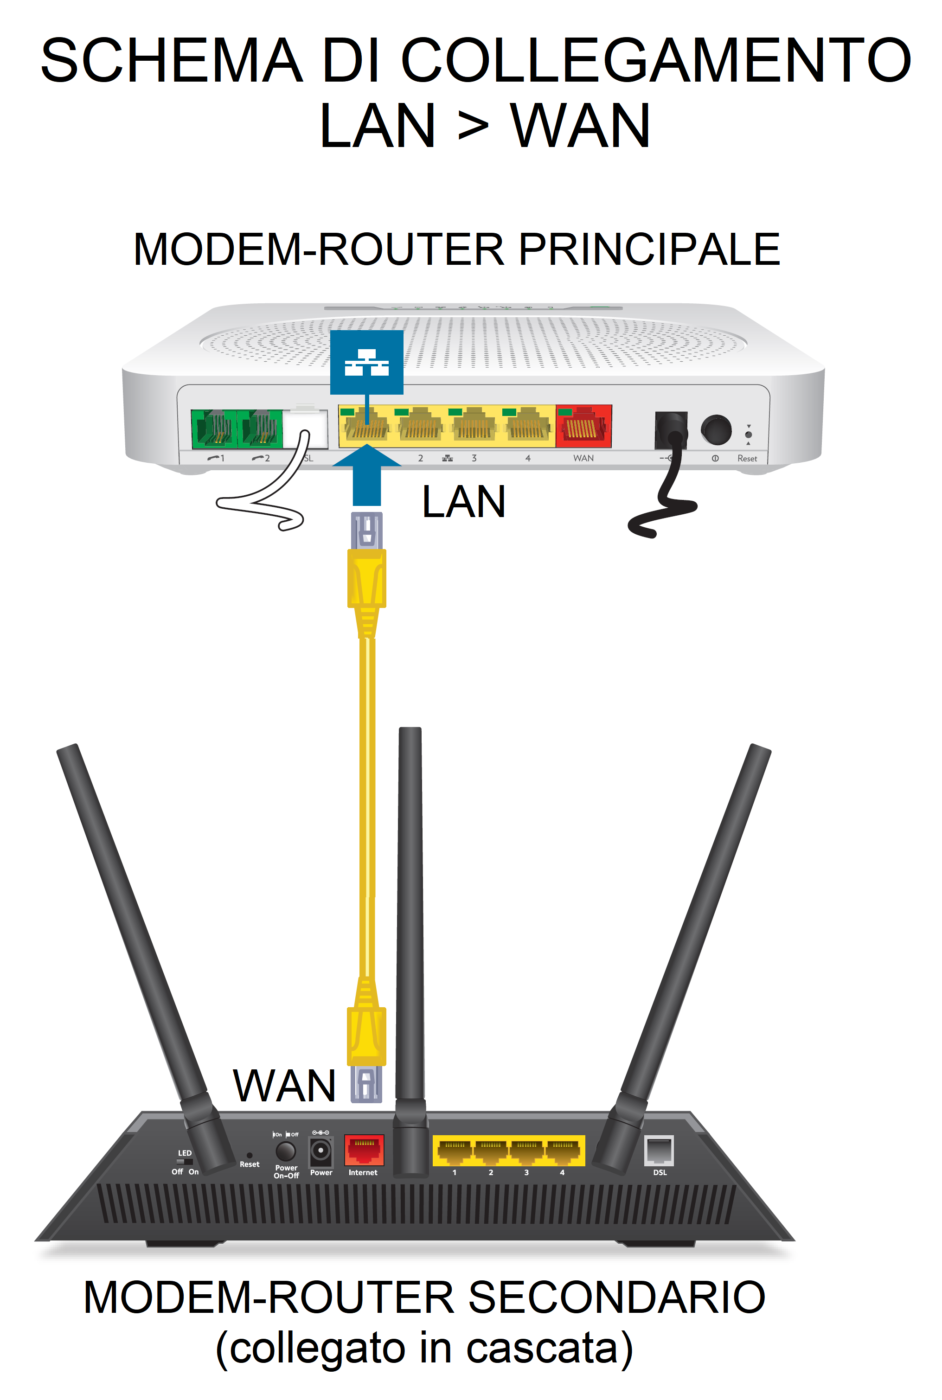 Schema di collegamento LAN-WAN tra modem e router